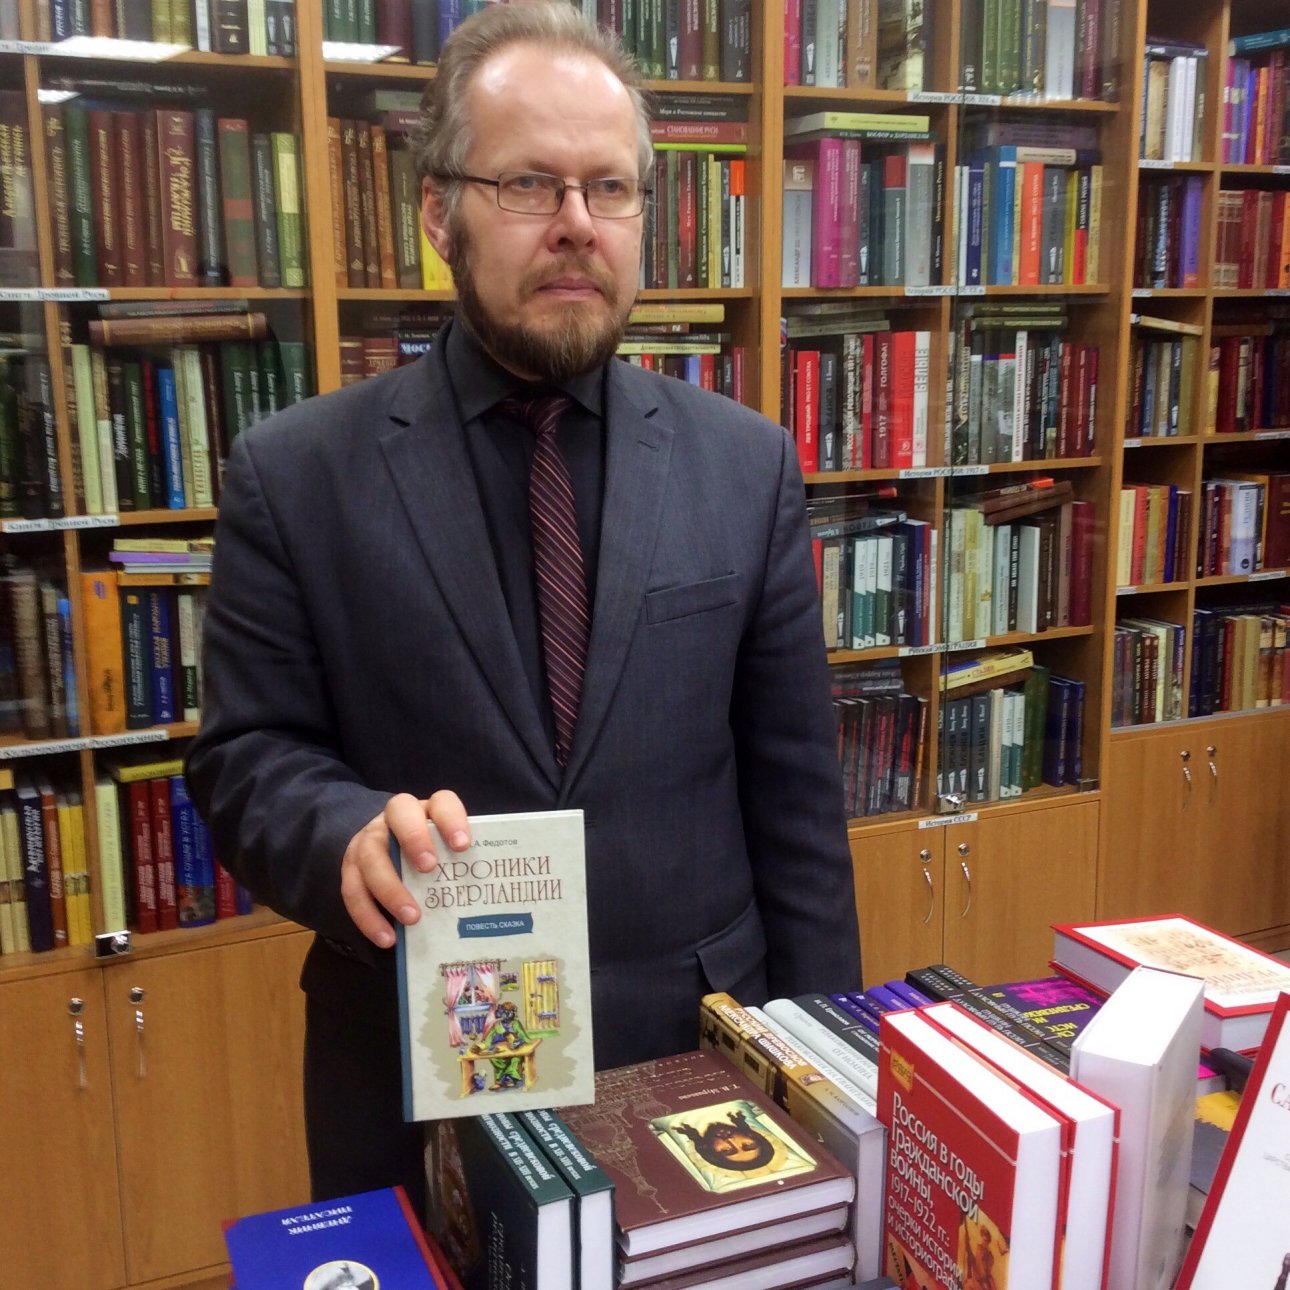 Алексей Федотов представил свою книгу "Хроники Зверландии" 